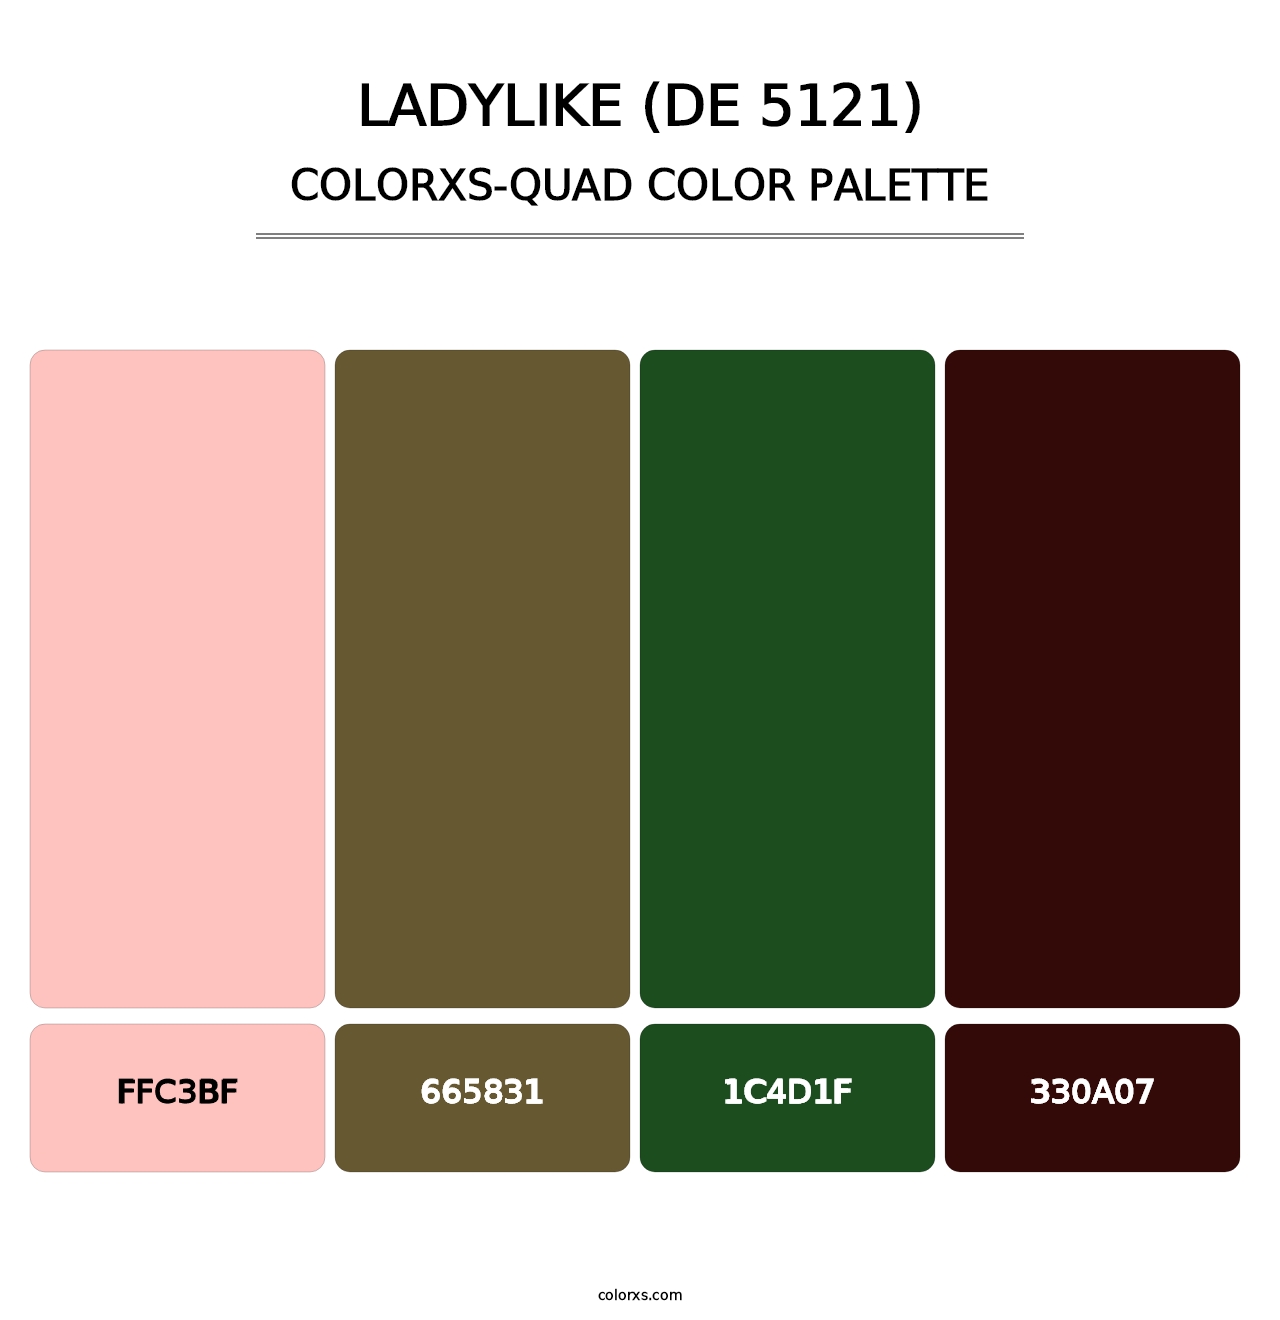 Ladylike (DE 5121) - Colorxs Quad Palette